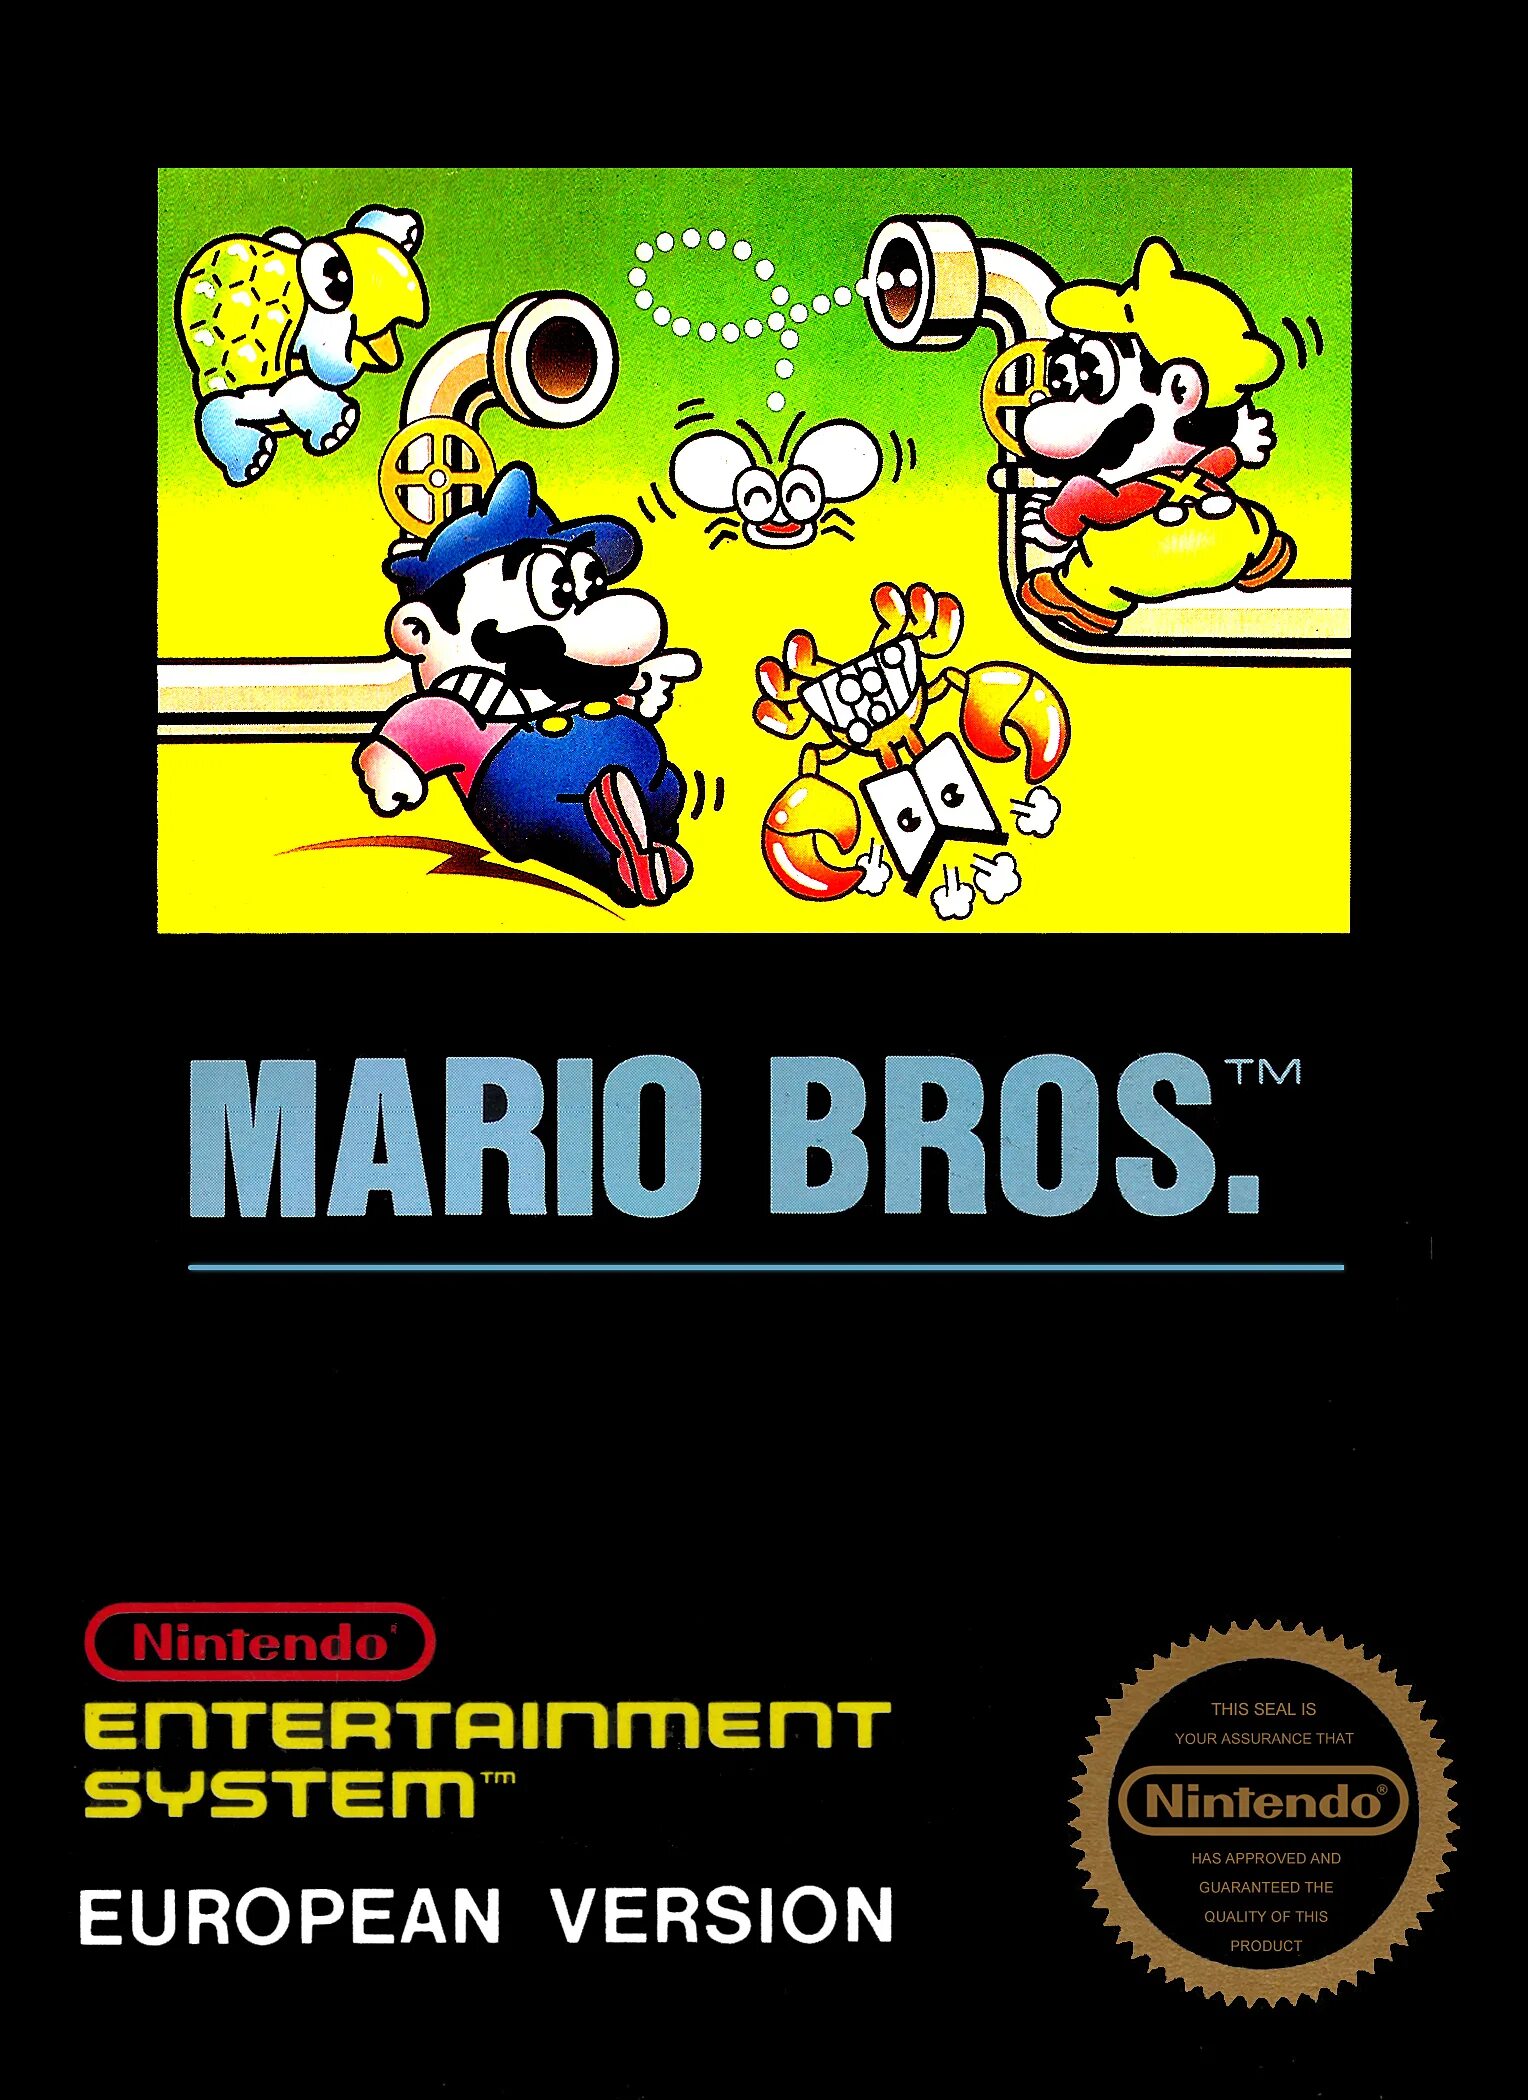 Mario bros special. Super Mario Bros NES обложка. Mario Bros 1983 NES. Super Mario Bros Dendy обложка. Super Mario Bros 1985 NES.